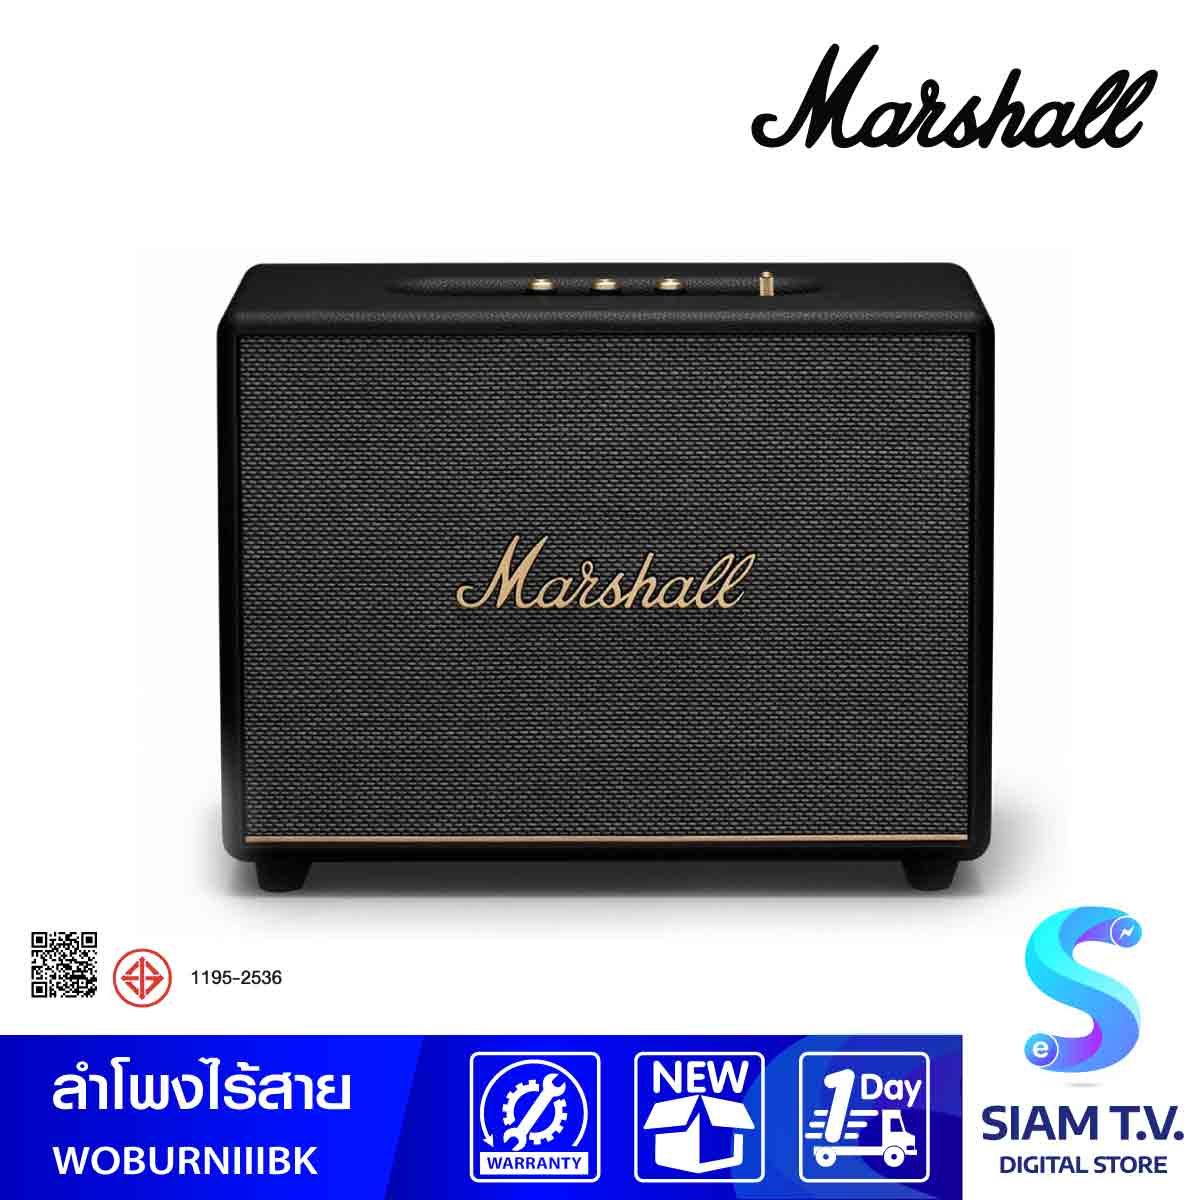 MARSHALL  ลำโพงไร้สาย Bluetooth Speaker รุ่น WOBURN III Bluetooth Speaker 150W